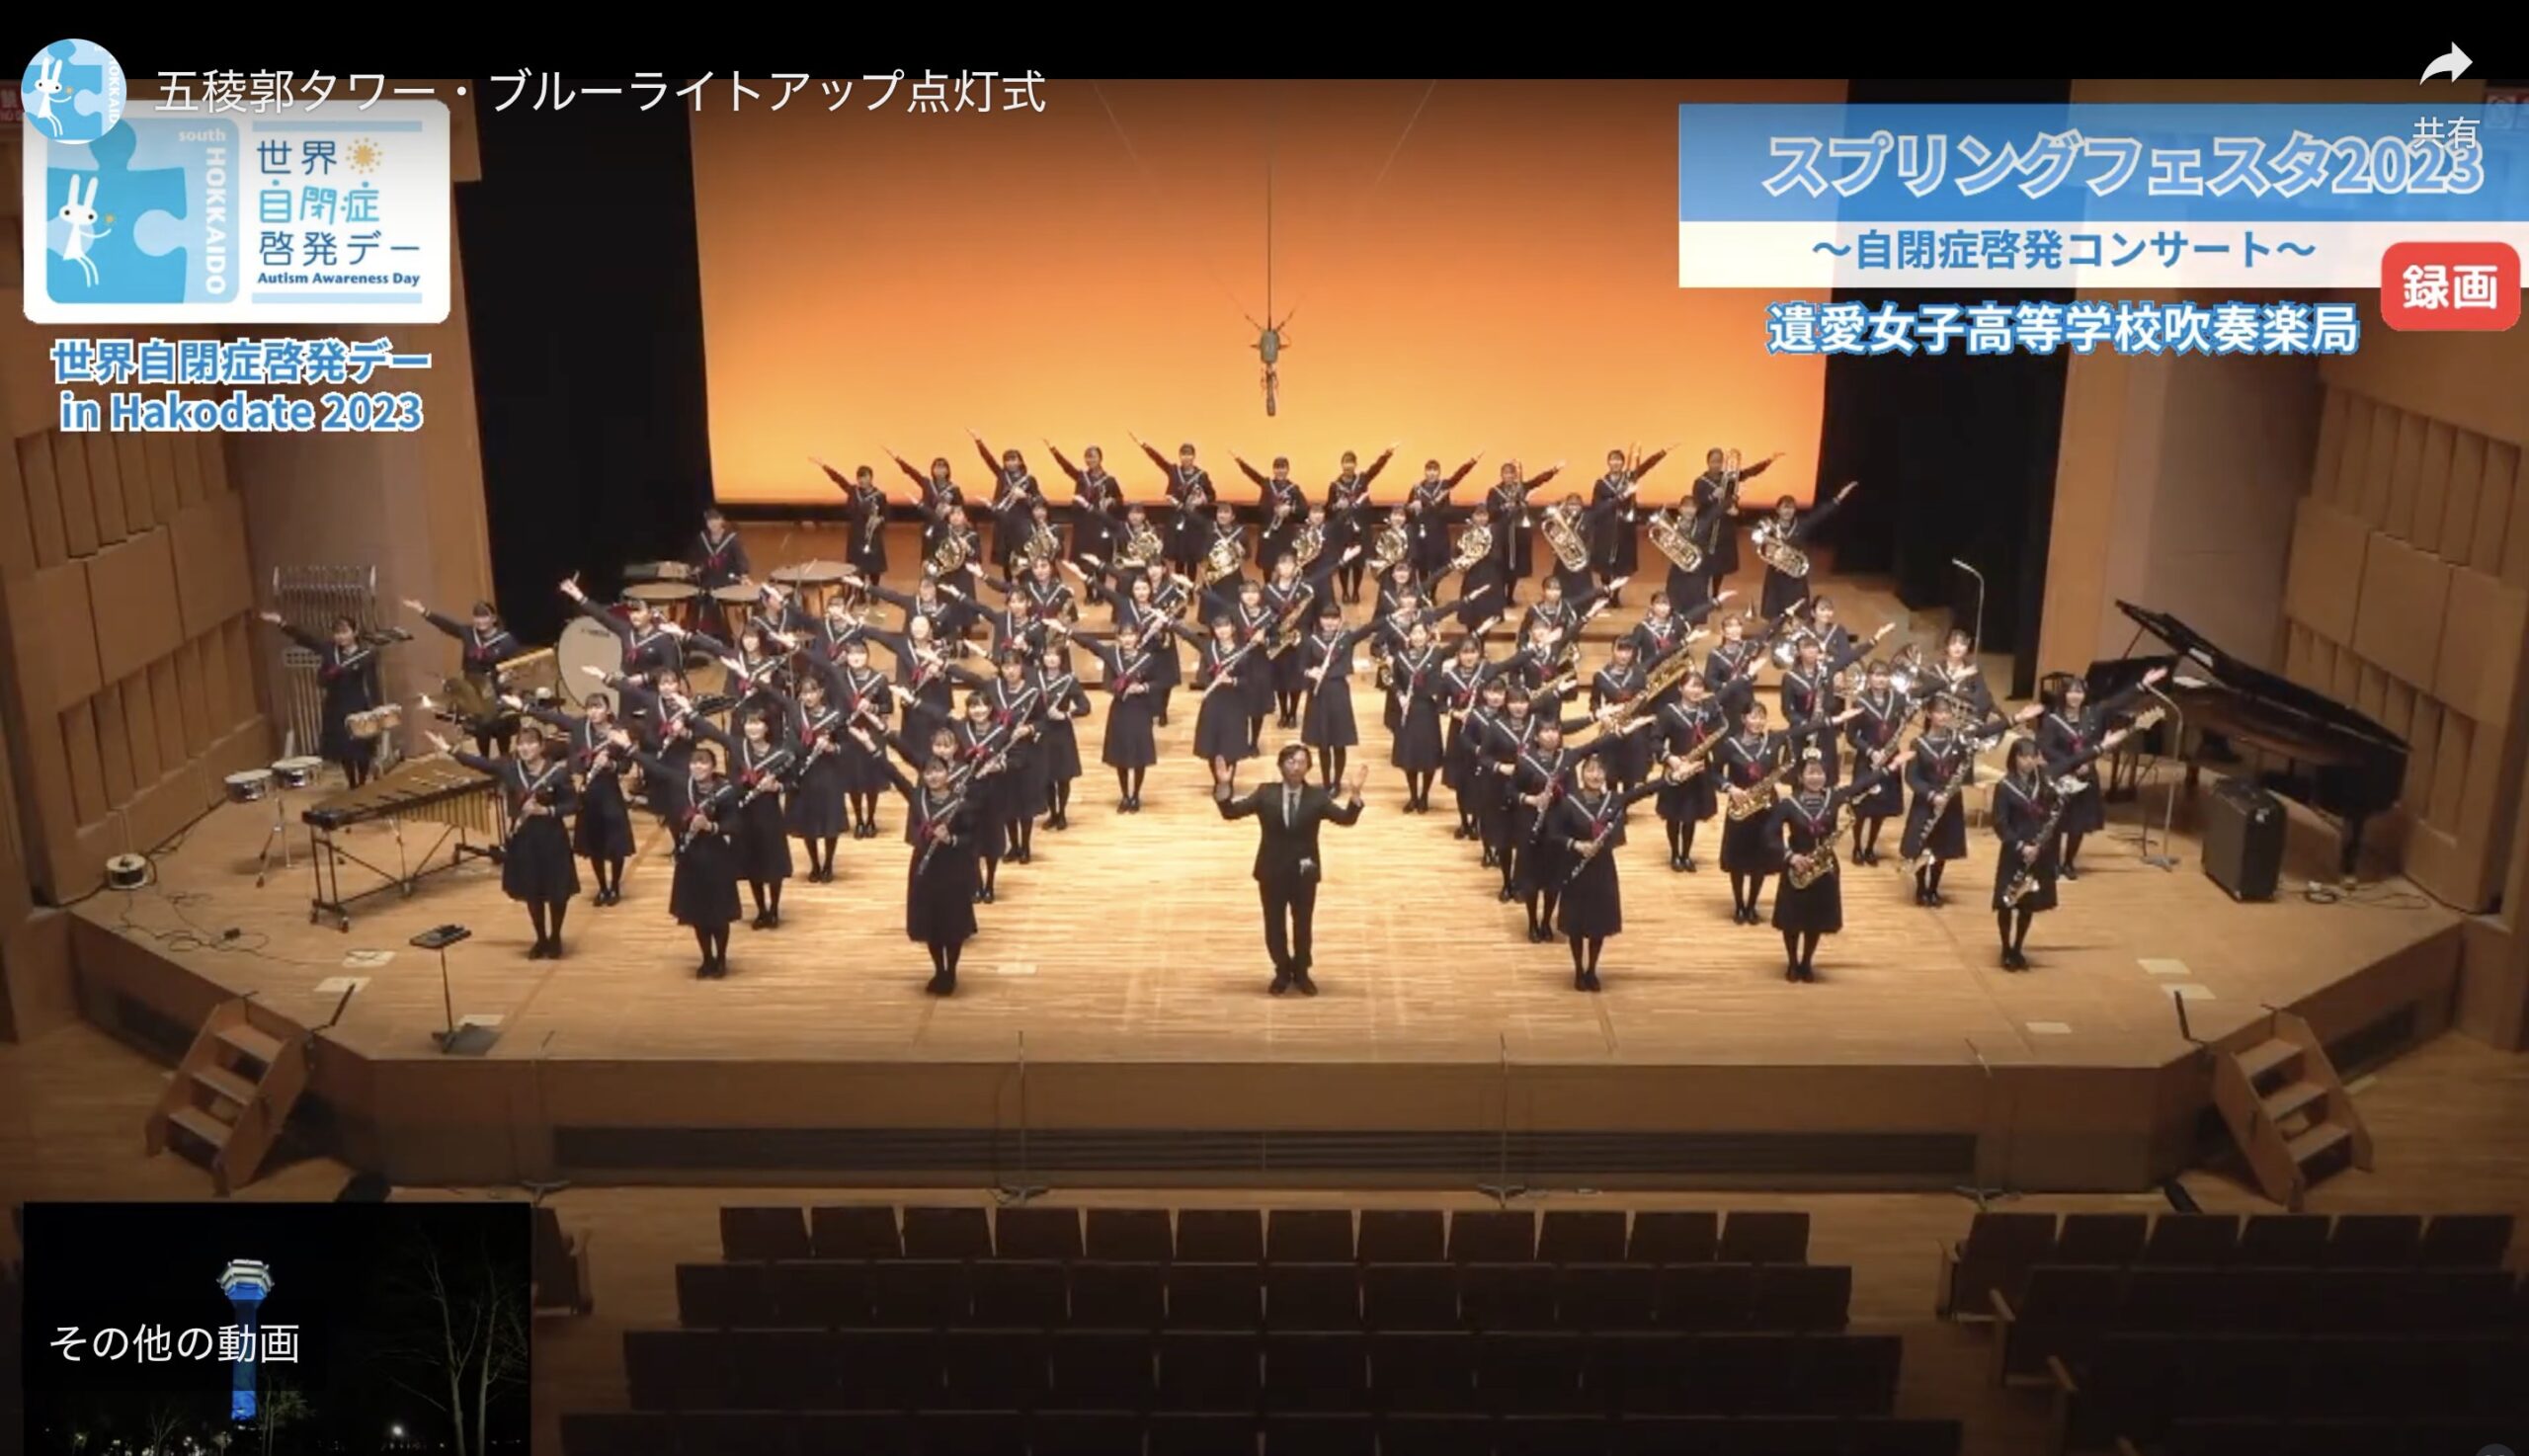 4月2日(日)函館市芸術ホールで遺愛女子高等学校吹奏楽局による「スプリングフェスタ2023 ～自閉症啓発コンサート～」を開催いたしました。動画をご視聴になれます。